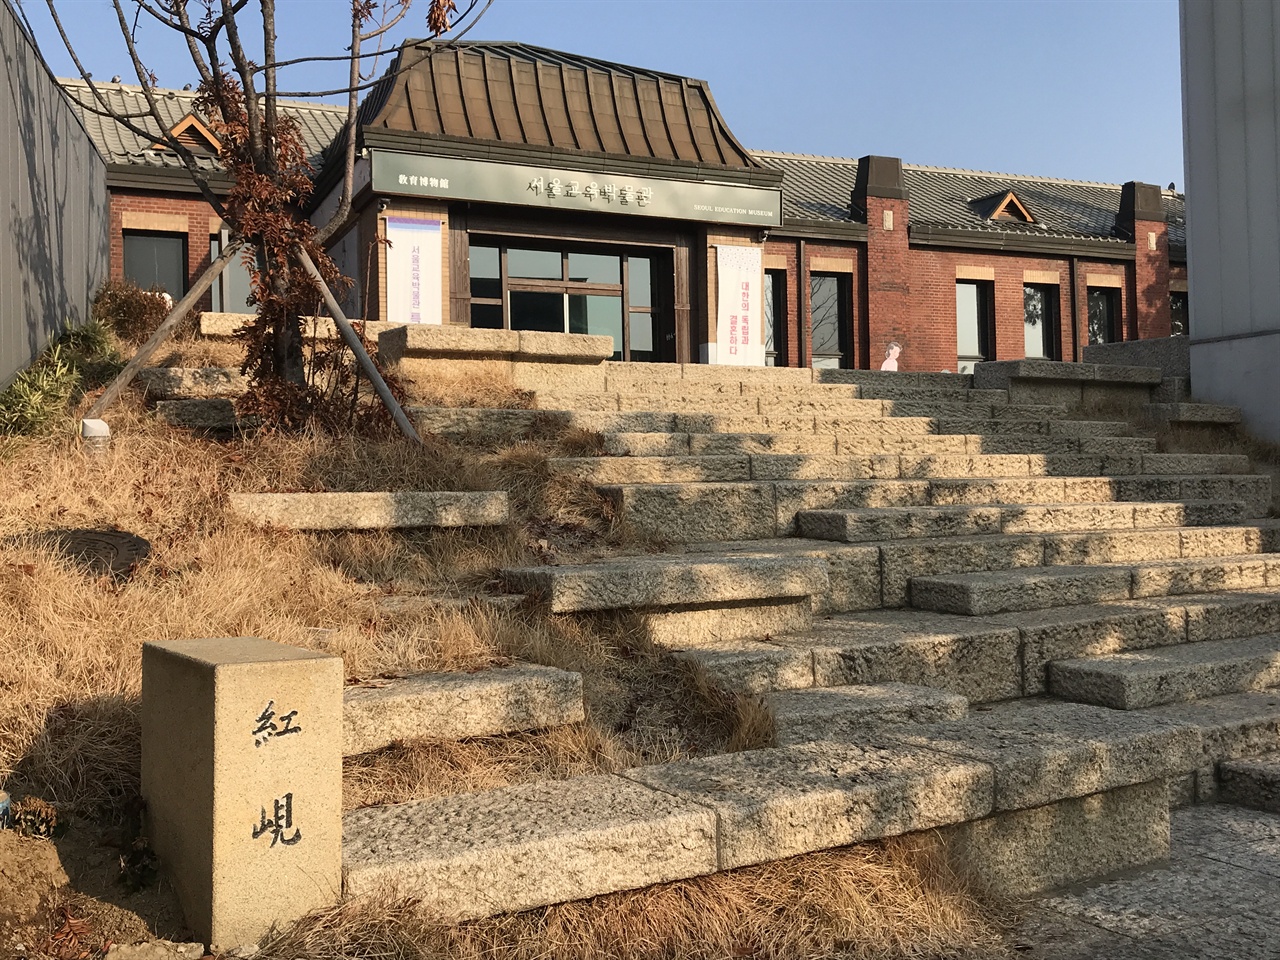 서울교육박물관 앞에는 ‘홍현’ 표지석이 서 있다. 정독도서관 입구에 있는 서울교육박물관은 경기중고등학교 시절 ‘교육관’으로 쓰였다. 정독도서관에 있는 건물 중 가장 오래된 건물이며, 등록문화재로 지정되었다. 